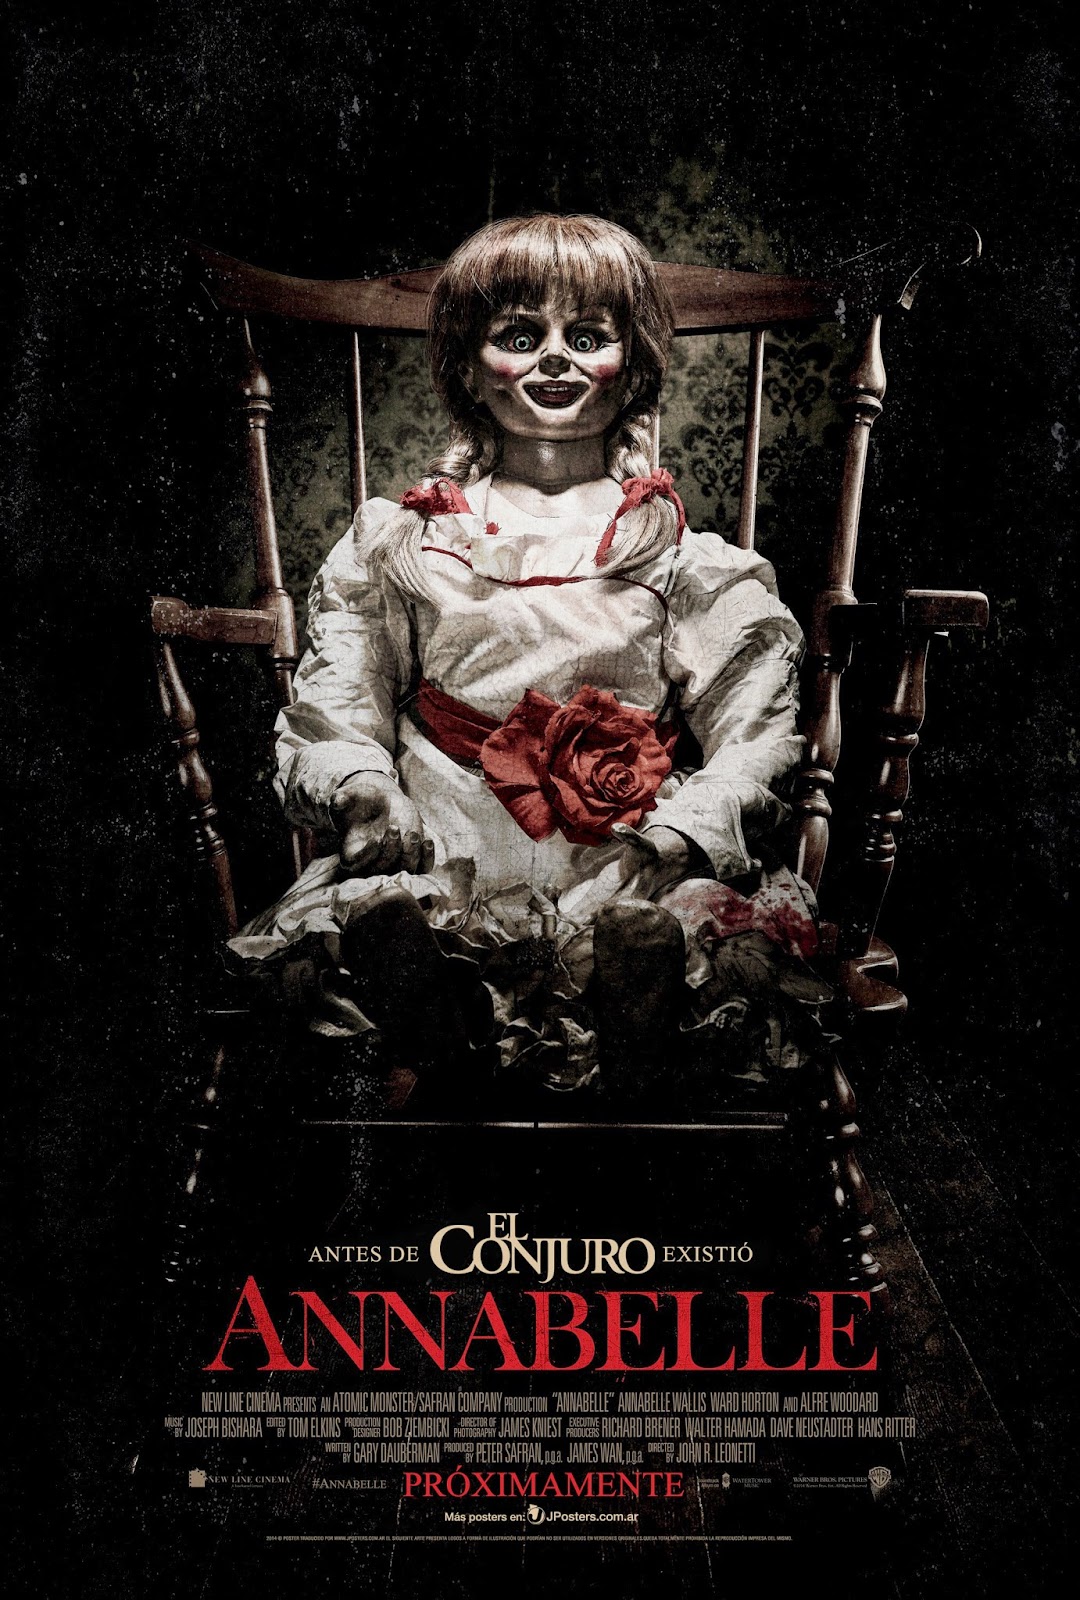 Annabelle (0919)